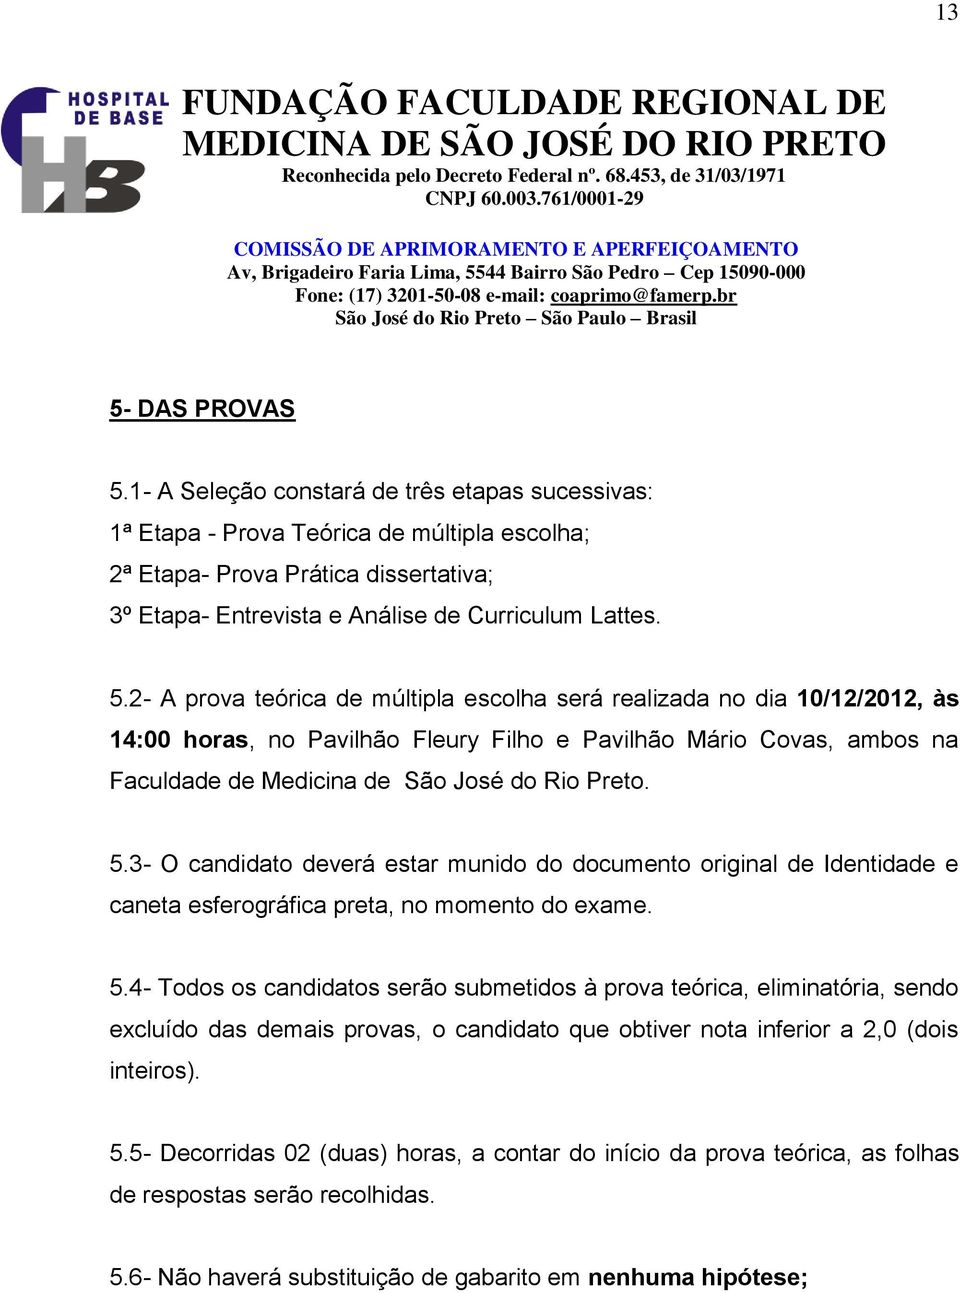 2- A prova teórica de múltipla escolha será realizada no dia 10/12/2012, às 14:00 horas, no Pavilhão Fleury Filho e Pavilhão Mário Covas, ambos na Faculdade de Medicina de São José do Rio Preto. 5.